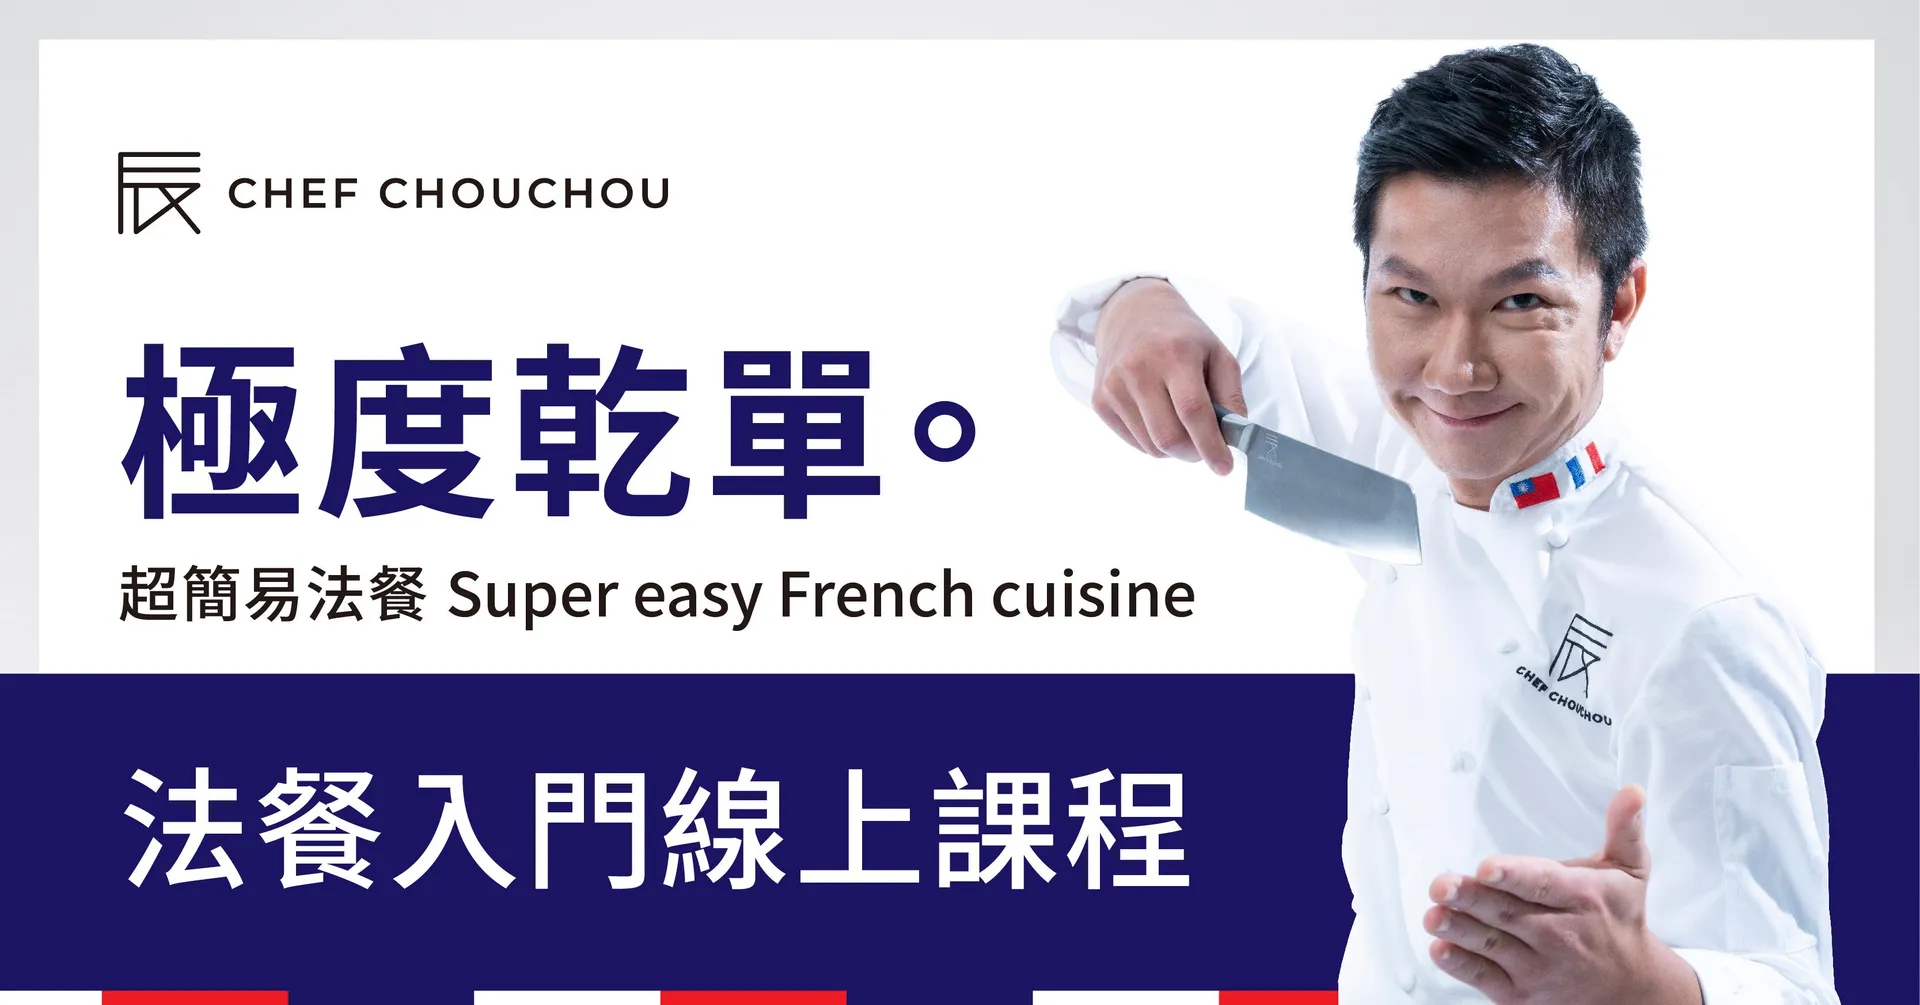 極度乾單 超簡易法餐 Super easy French cuisine